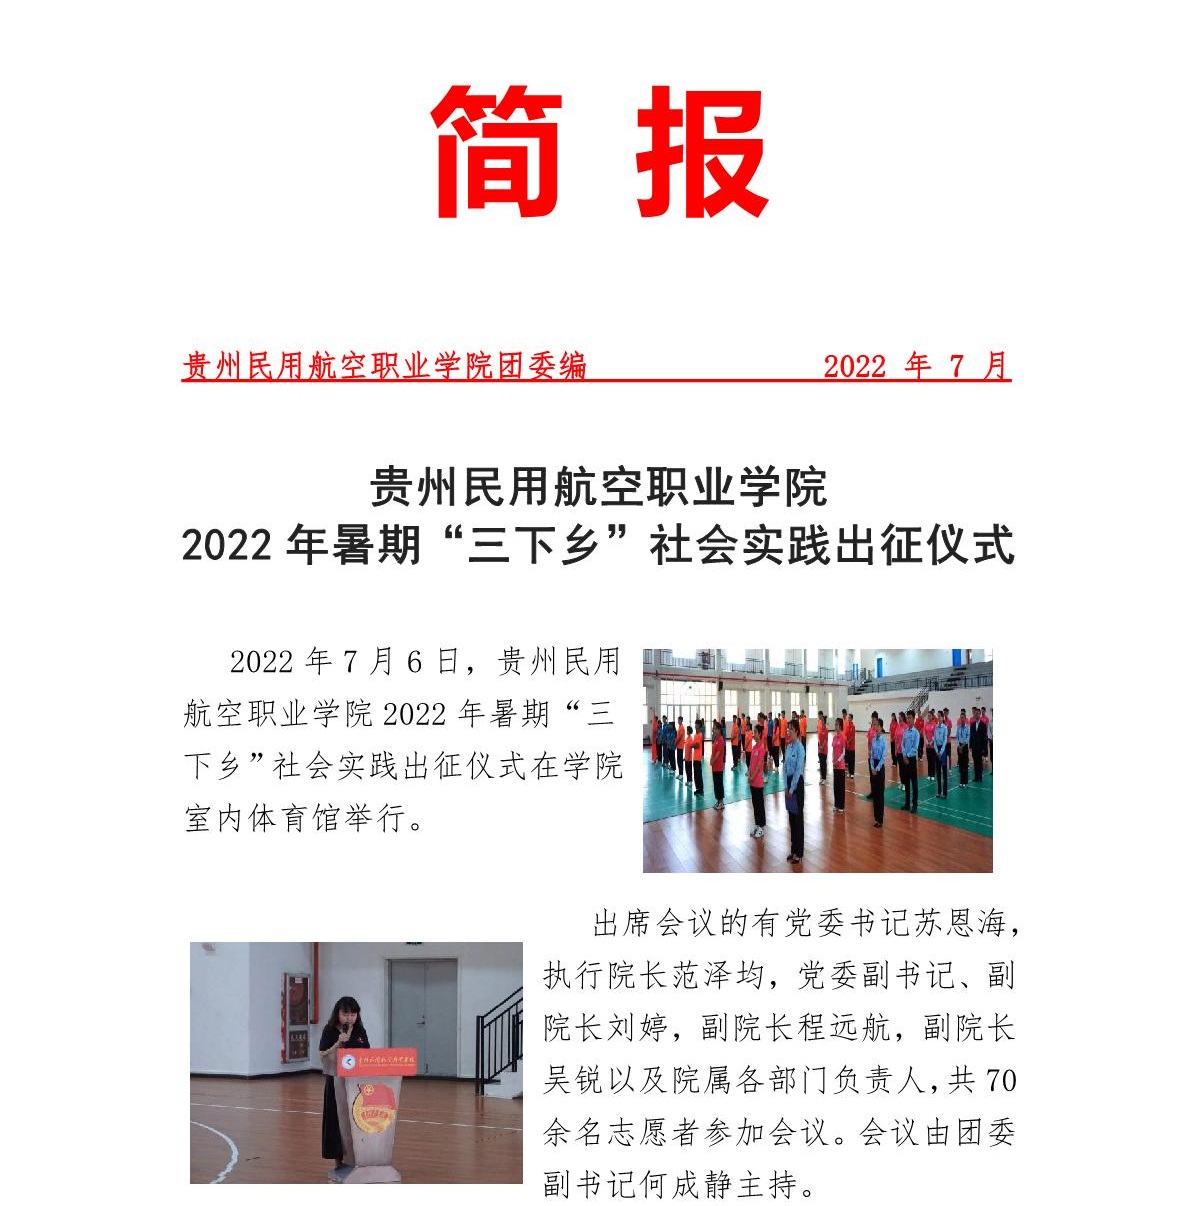 2022年暑期“三下乡”社会实践出征仪式简报_1.jpg